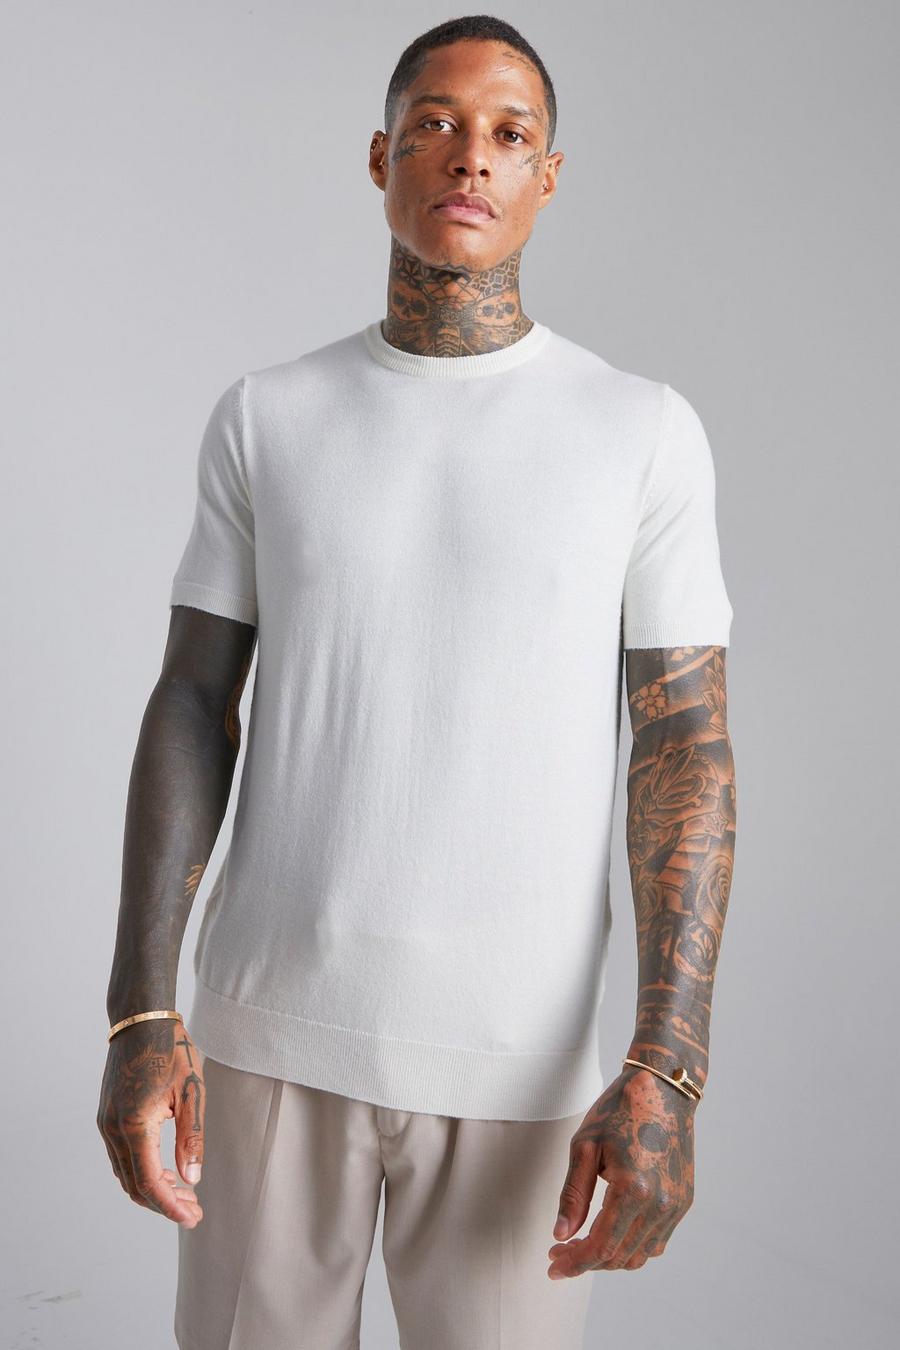 BasicStrick T-Shirt, Cream white